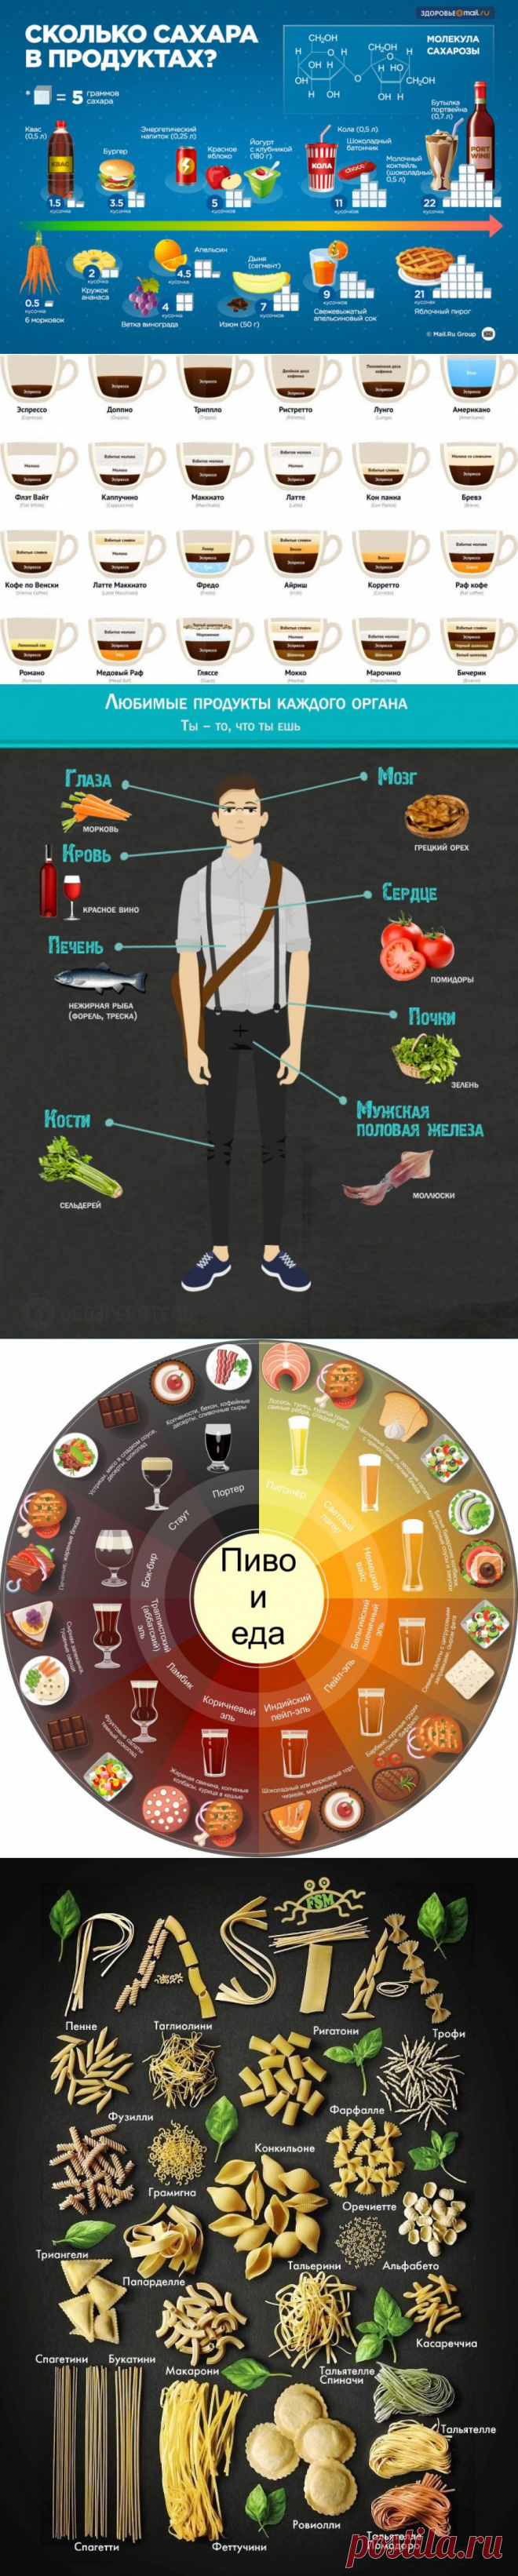 10 полезных примеров инфографики о еде и всем, что с ней связано | Prikolisti.com